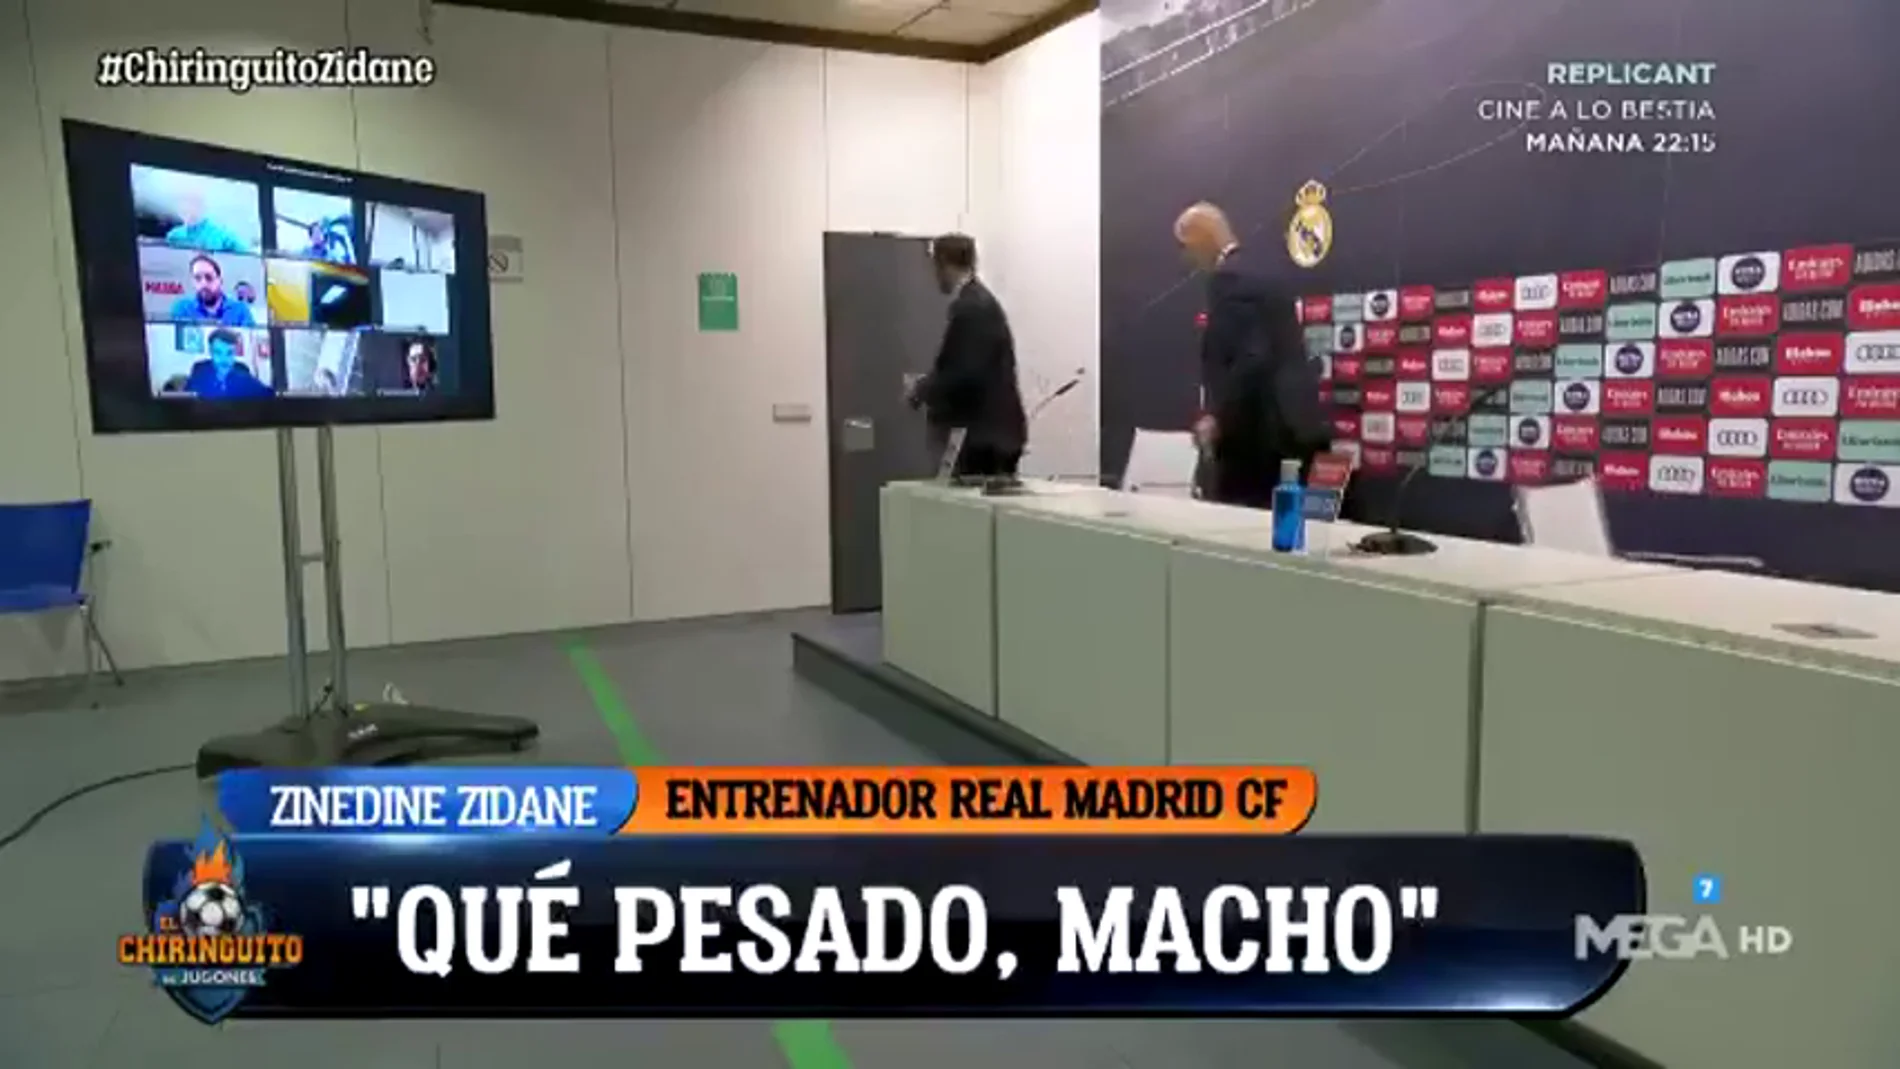 Zidane estalló al finalizar la rueda de prensa: "¡Qué pesado, macho!"